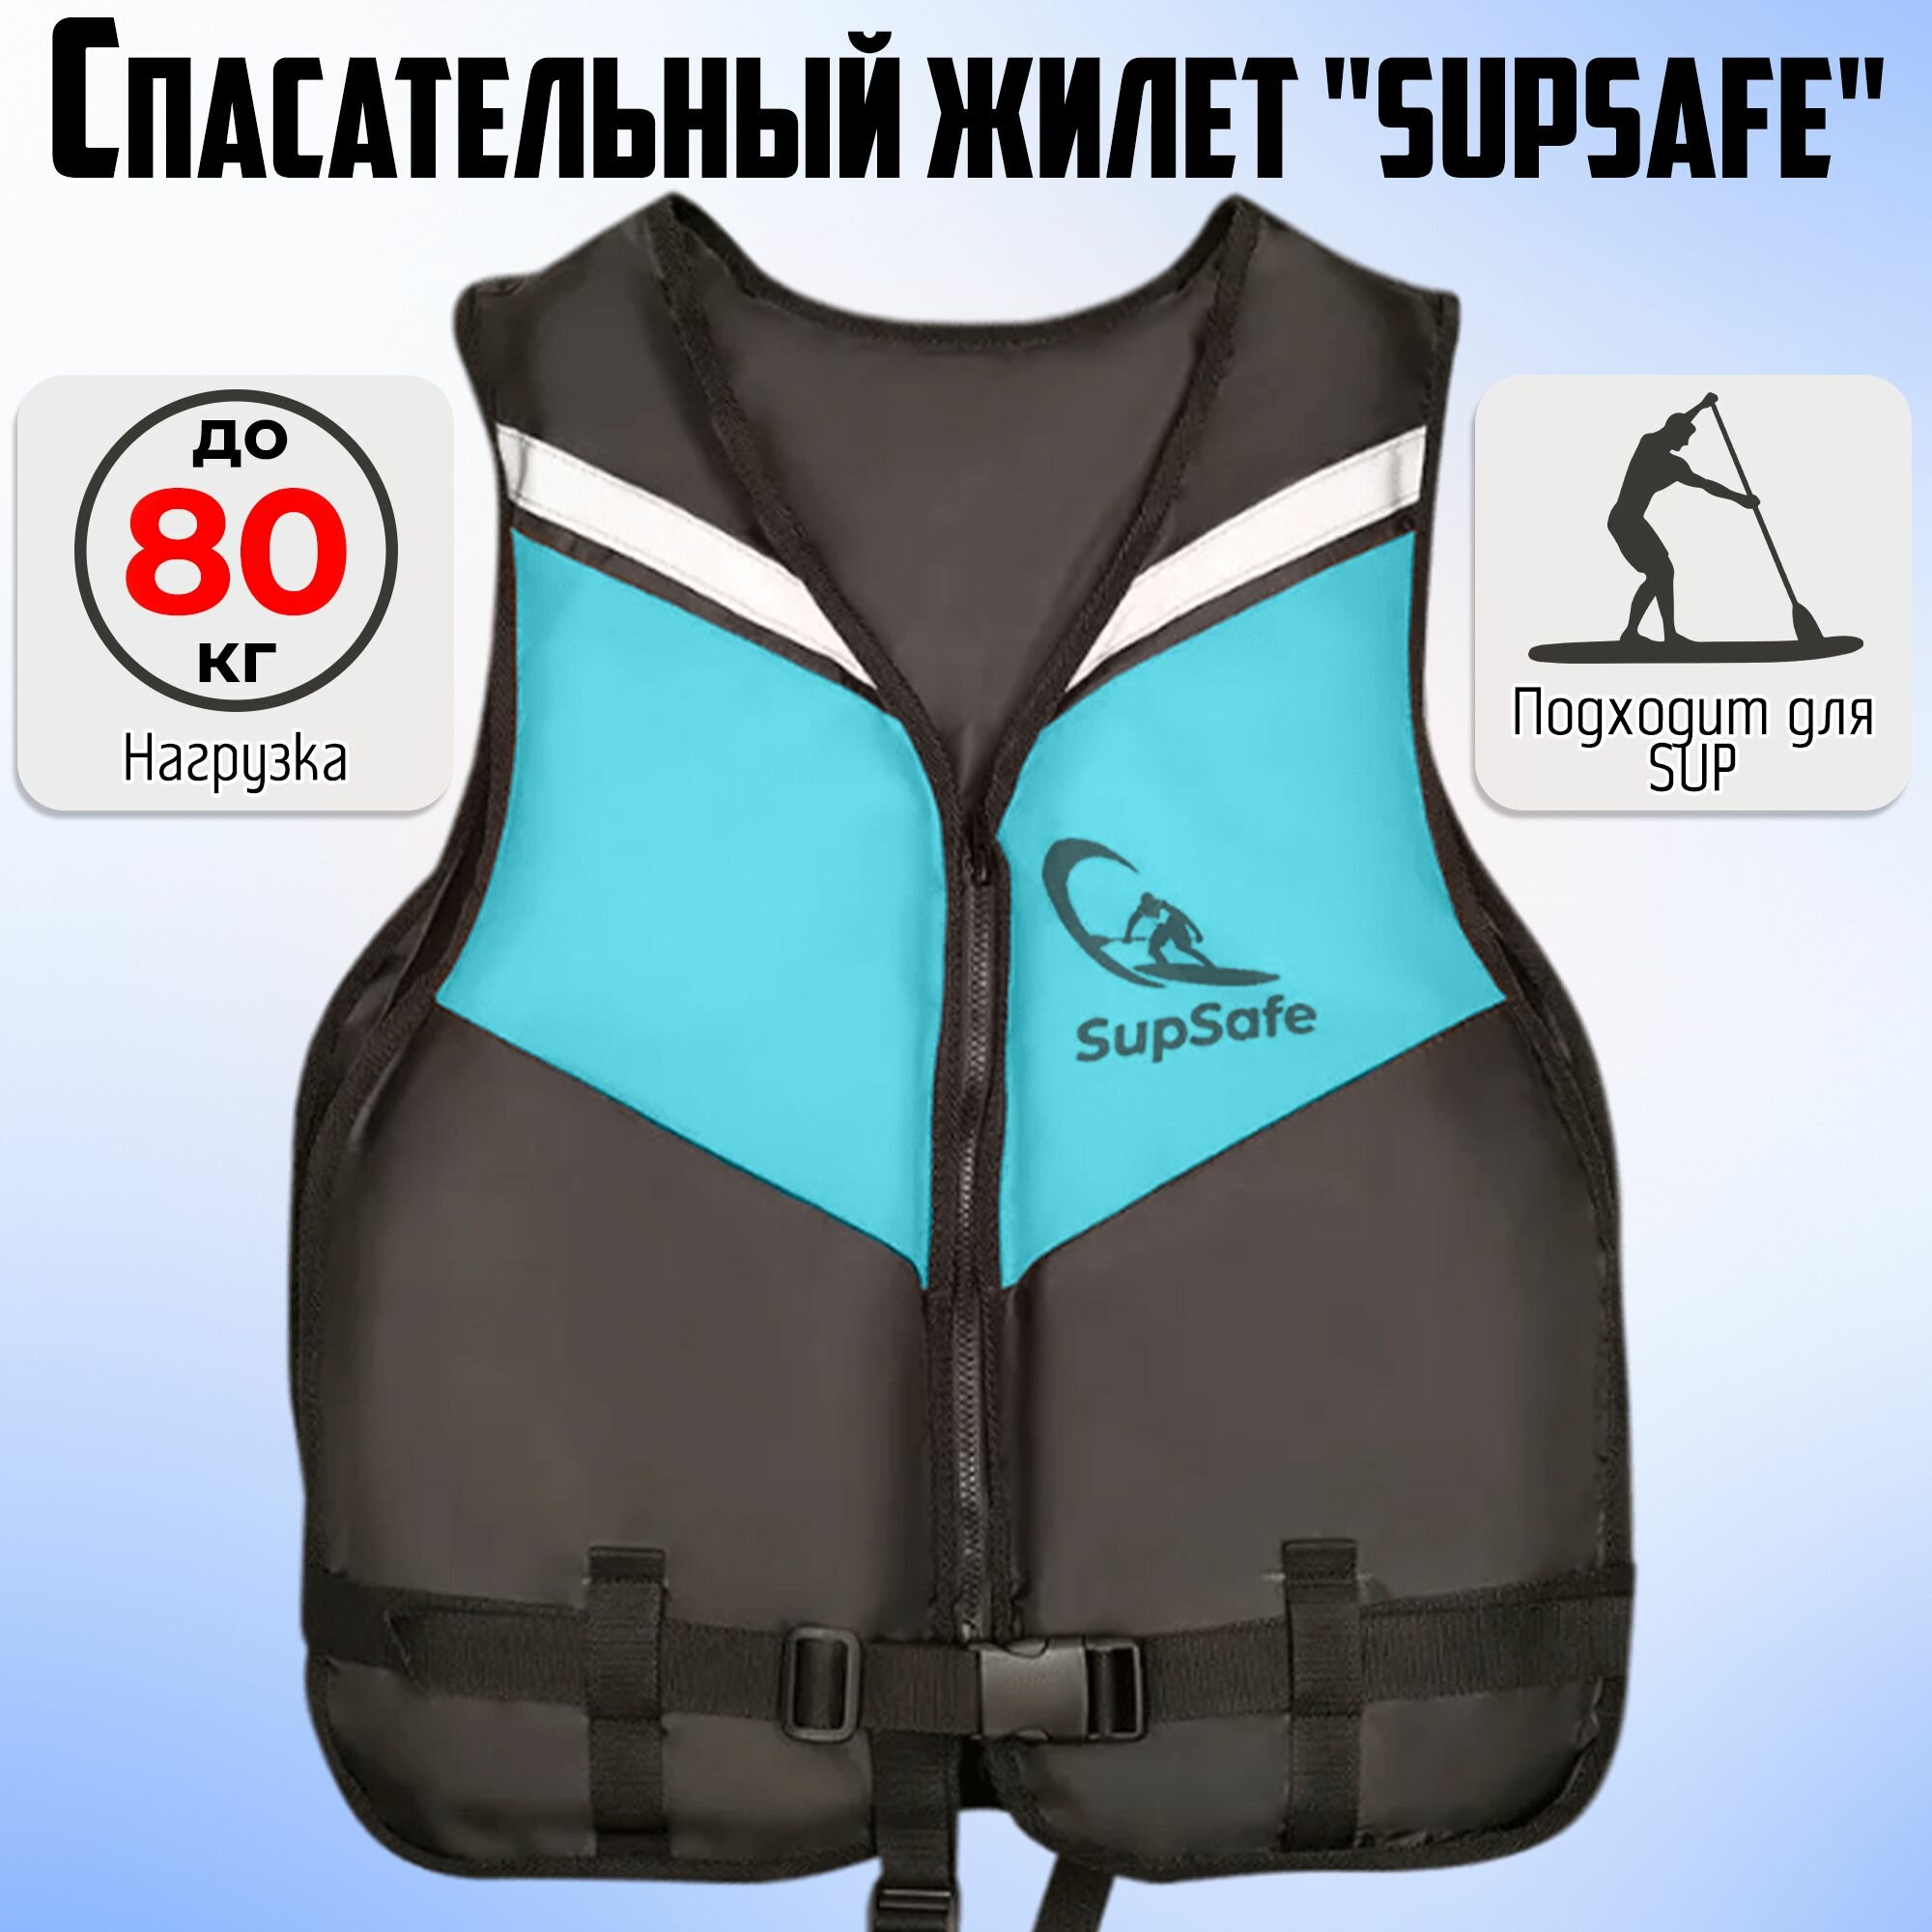 Спасательный жилет SupSafe до 80 кг